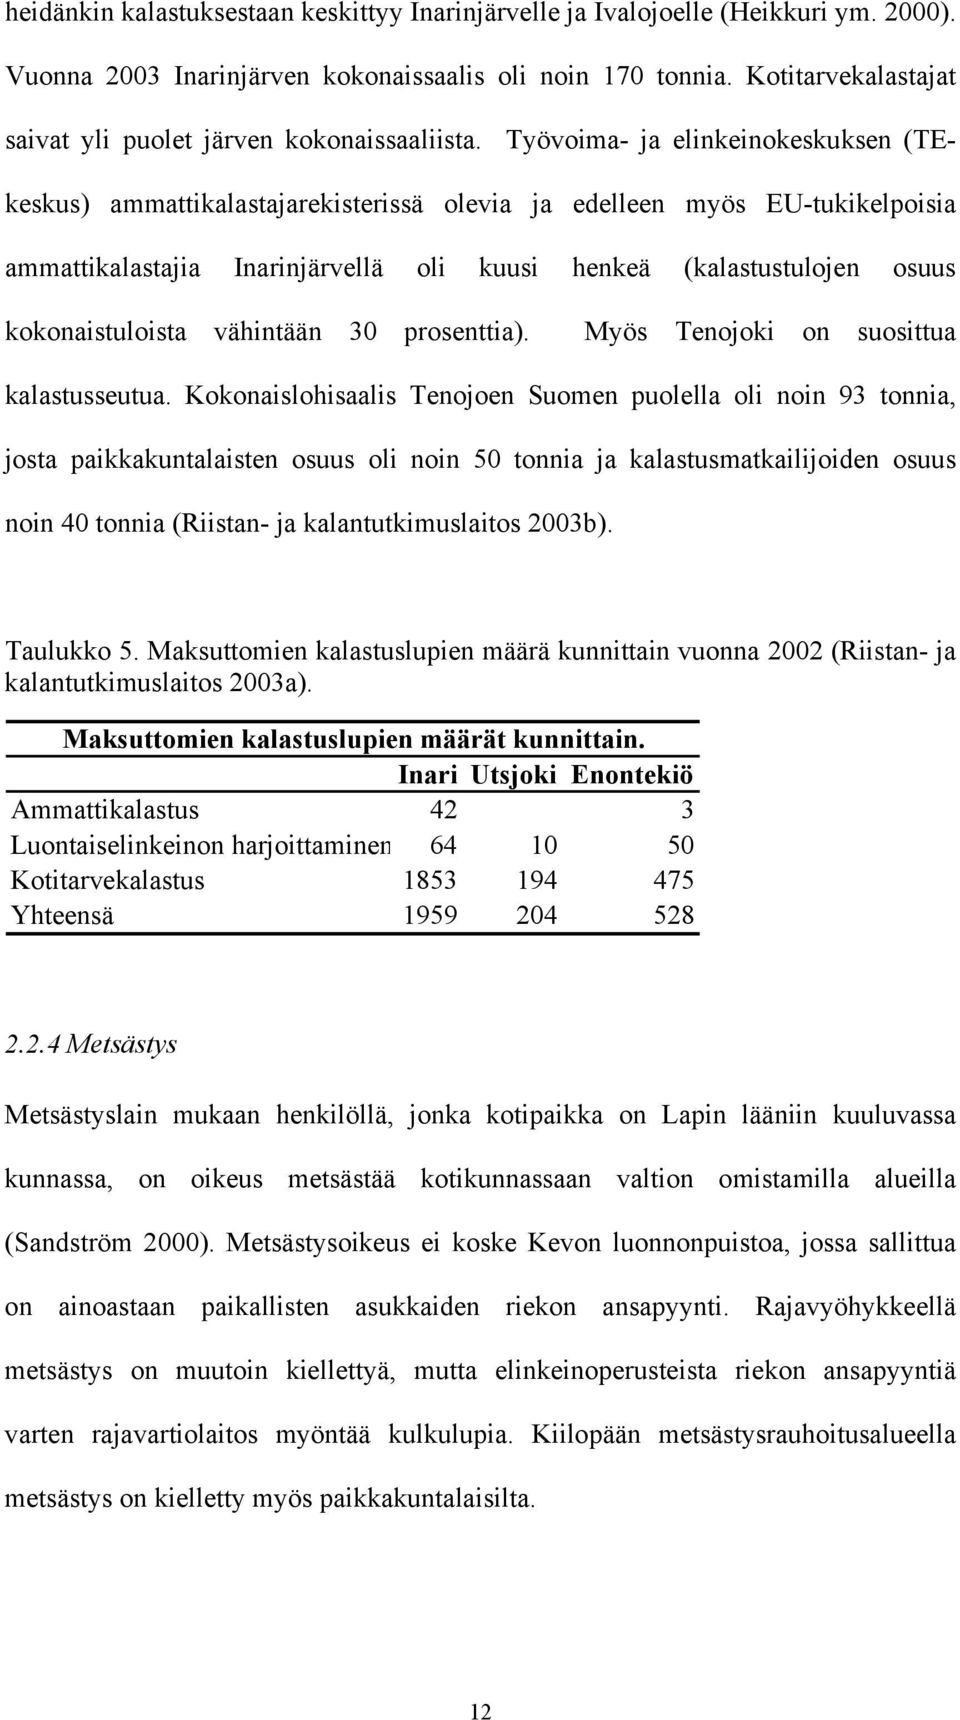 Työvoima- ja elinkeinokeskuksen (TEkeskus) ammattikalastajarekisterissä olevia ja edelleen myös EU-tukikelpoisia ammattikalastajia Inarinjärvellä oli kuusi henkeä (kalastustulojen osuus